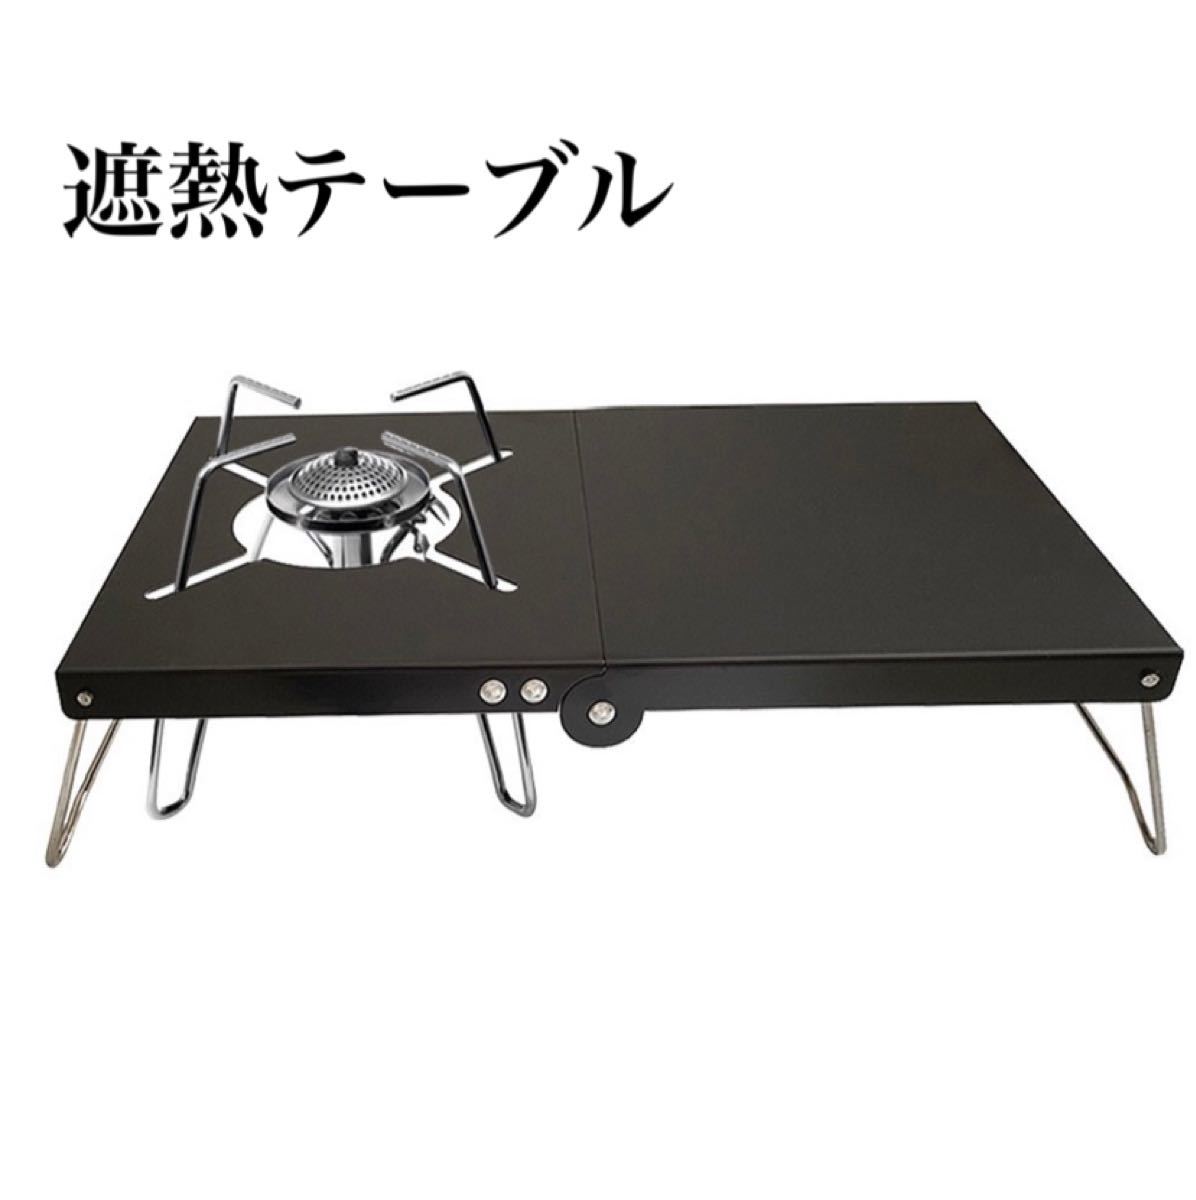 遮熱テーブル 遮熱板 折りたたみ コンパクト ブラック  シングルバーナー対応